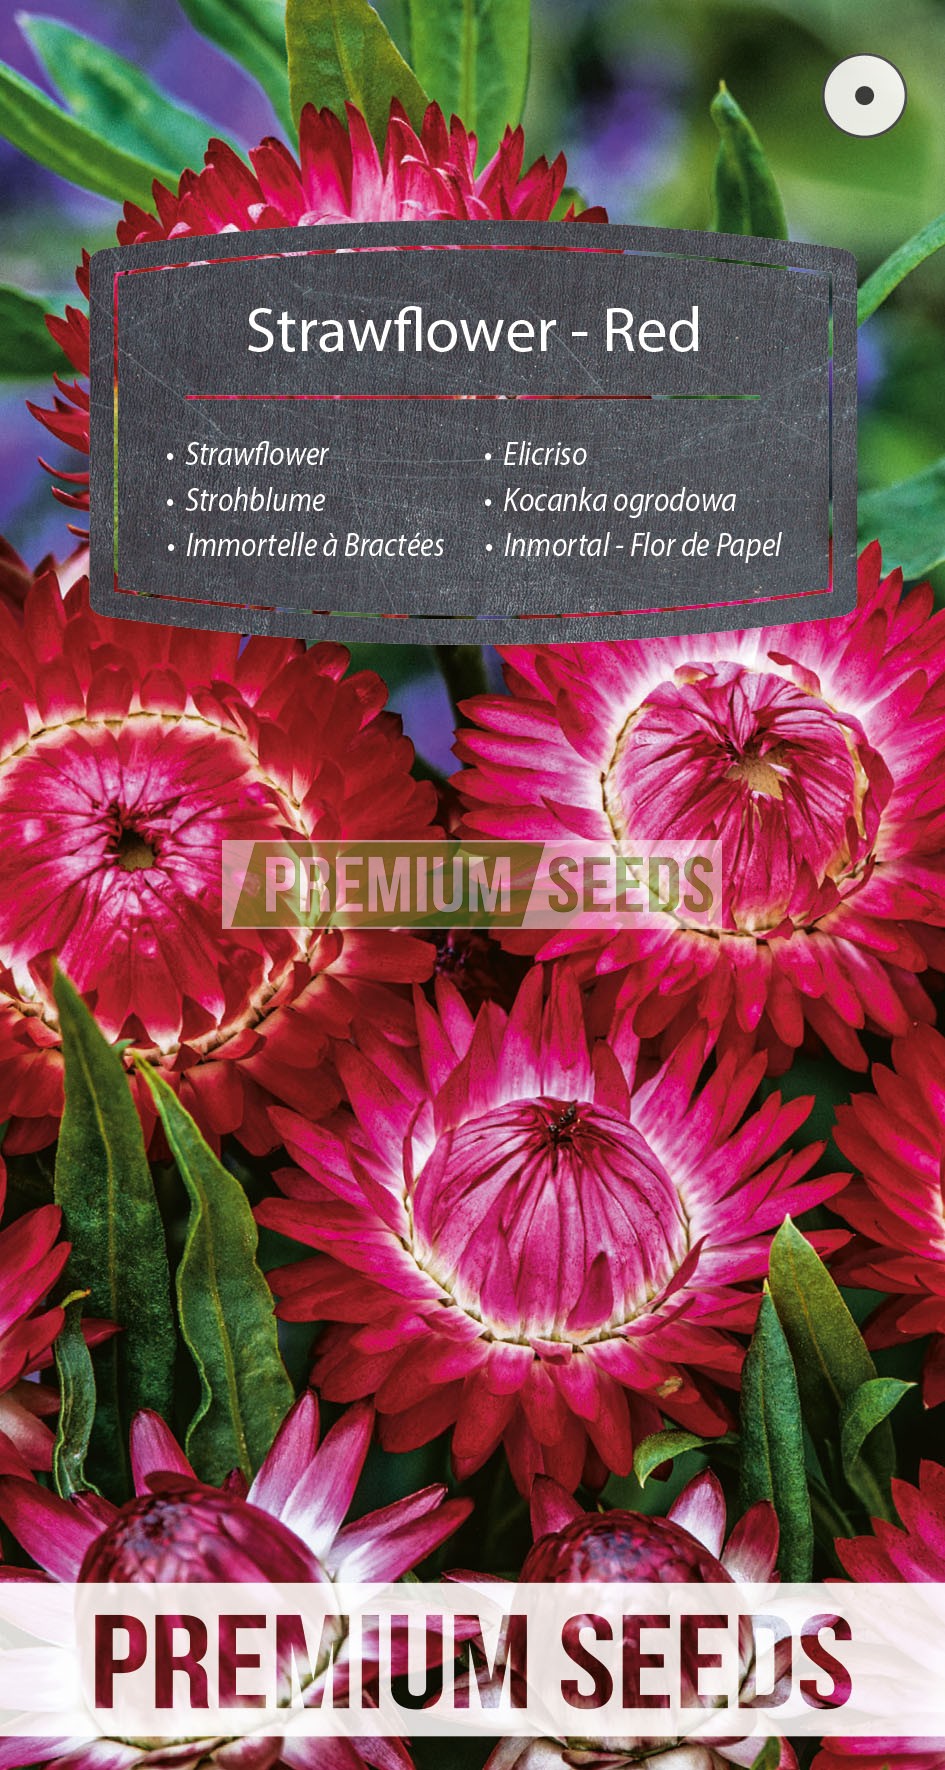 Inmortal - Flor de Papel - Roja - productor de semillas - PremiumSeeds